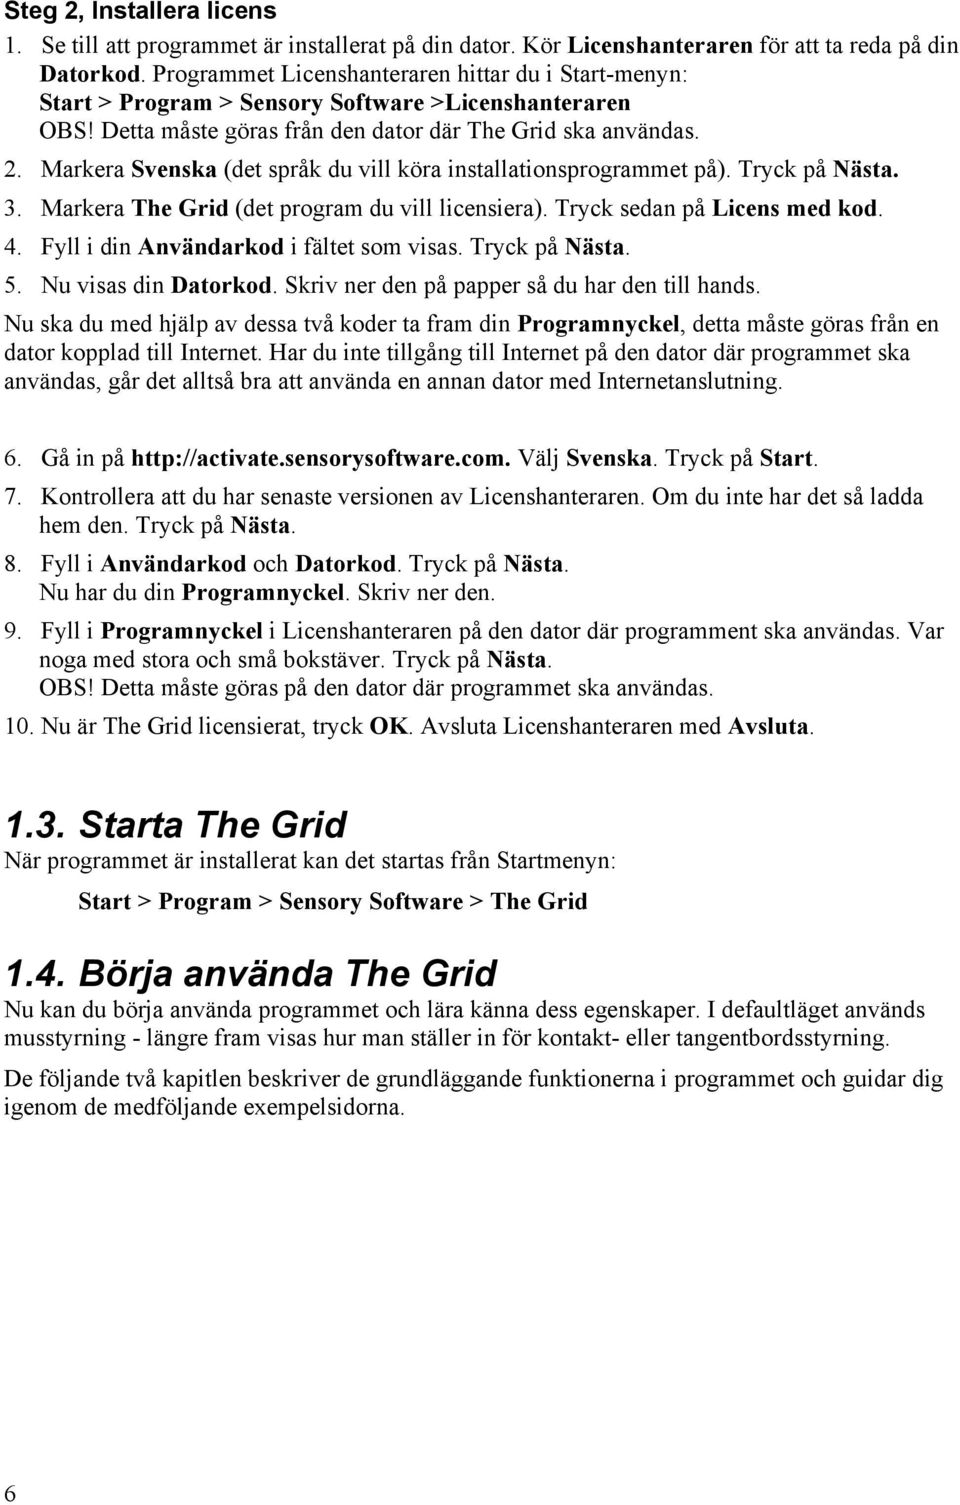 Markera Svenska (det språk du vill köra installationsprogrammet på). Tryck på Nästa. 3. Markera The Grid (det program du vill licensiera). Tryck sedan på Licens med kod. 4.